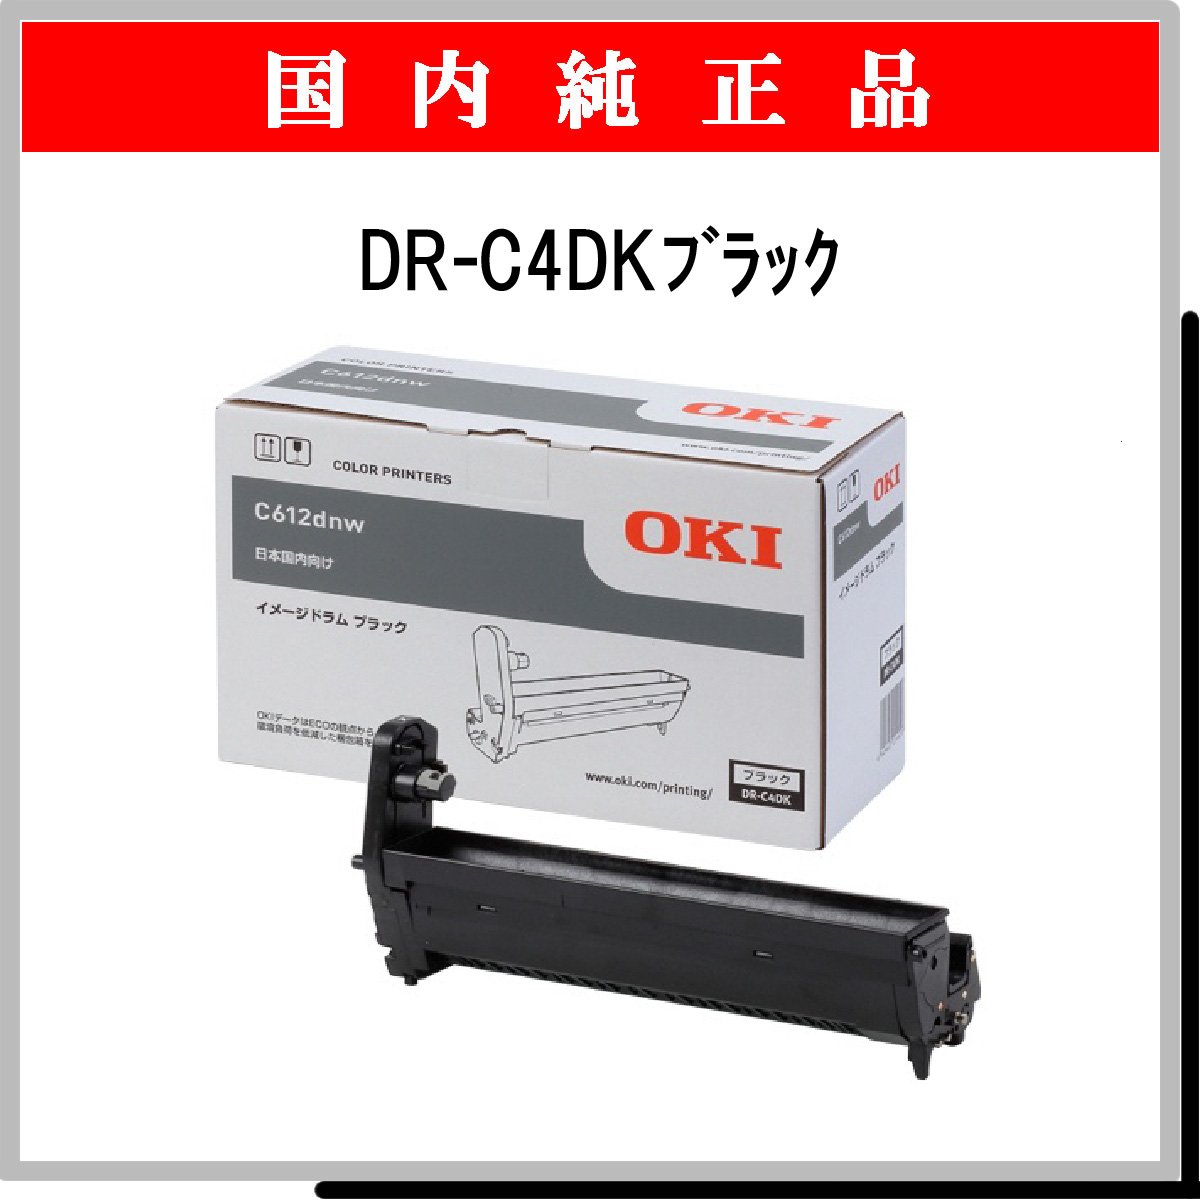 通販高品質 OKI/沖データ イメージドラム マゼンタ (C612dnw) DR-C4DM